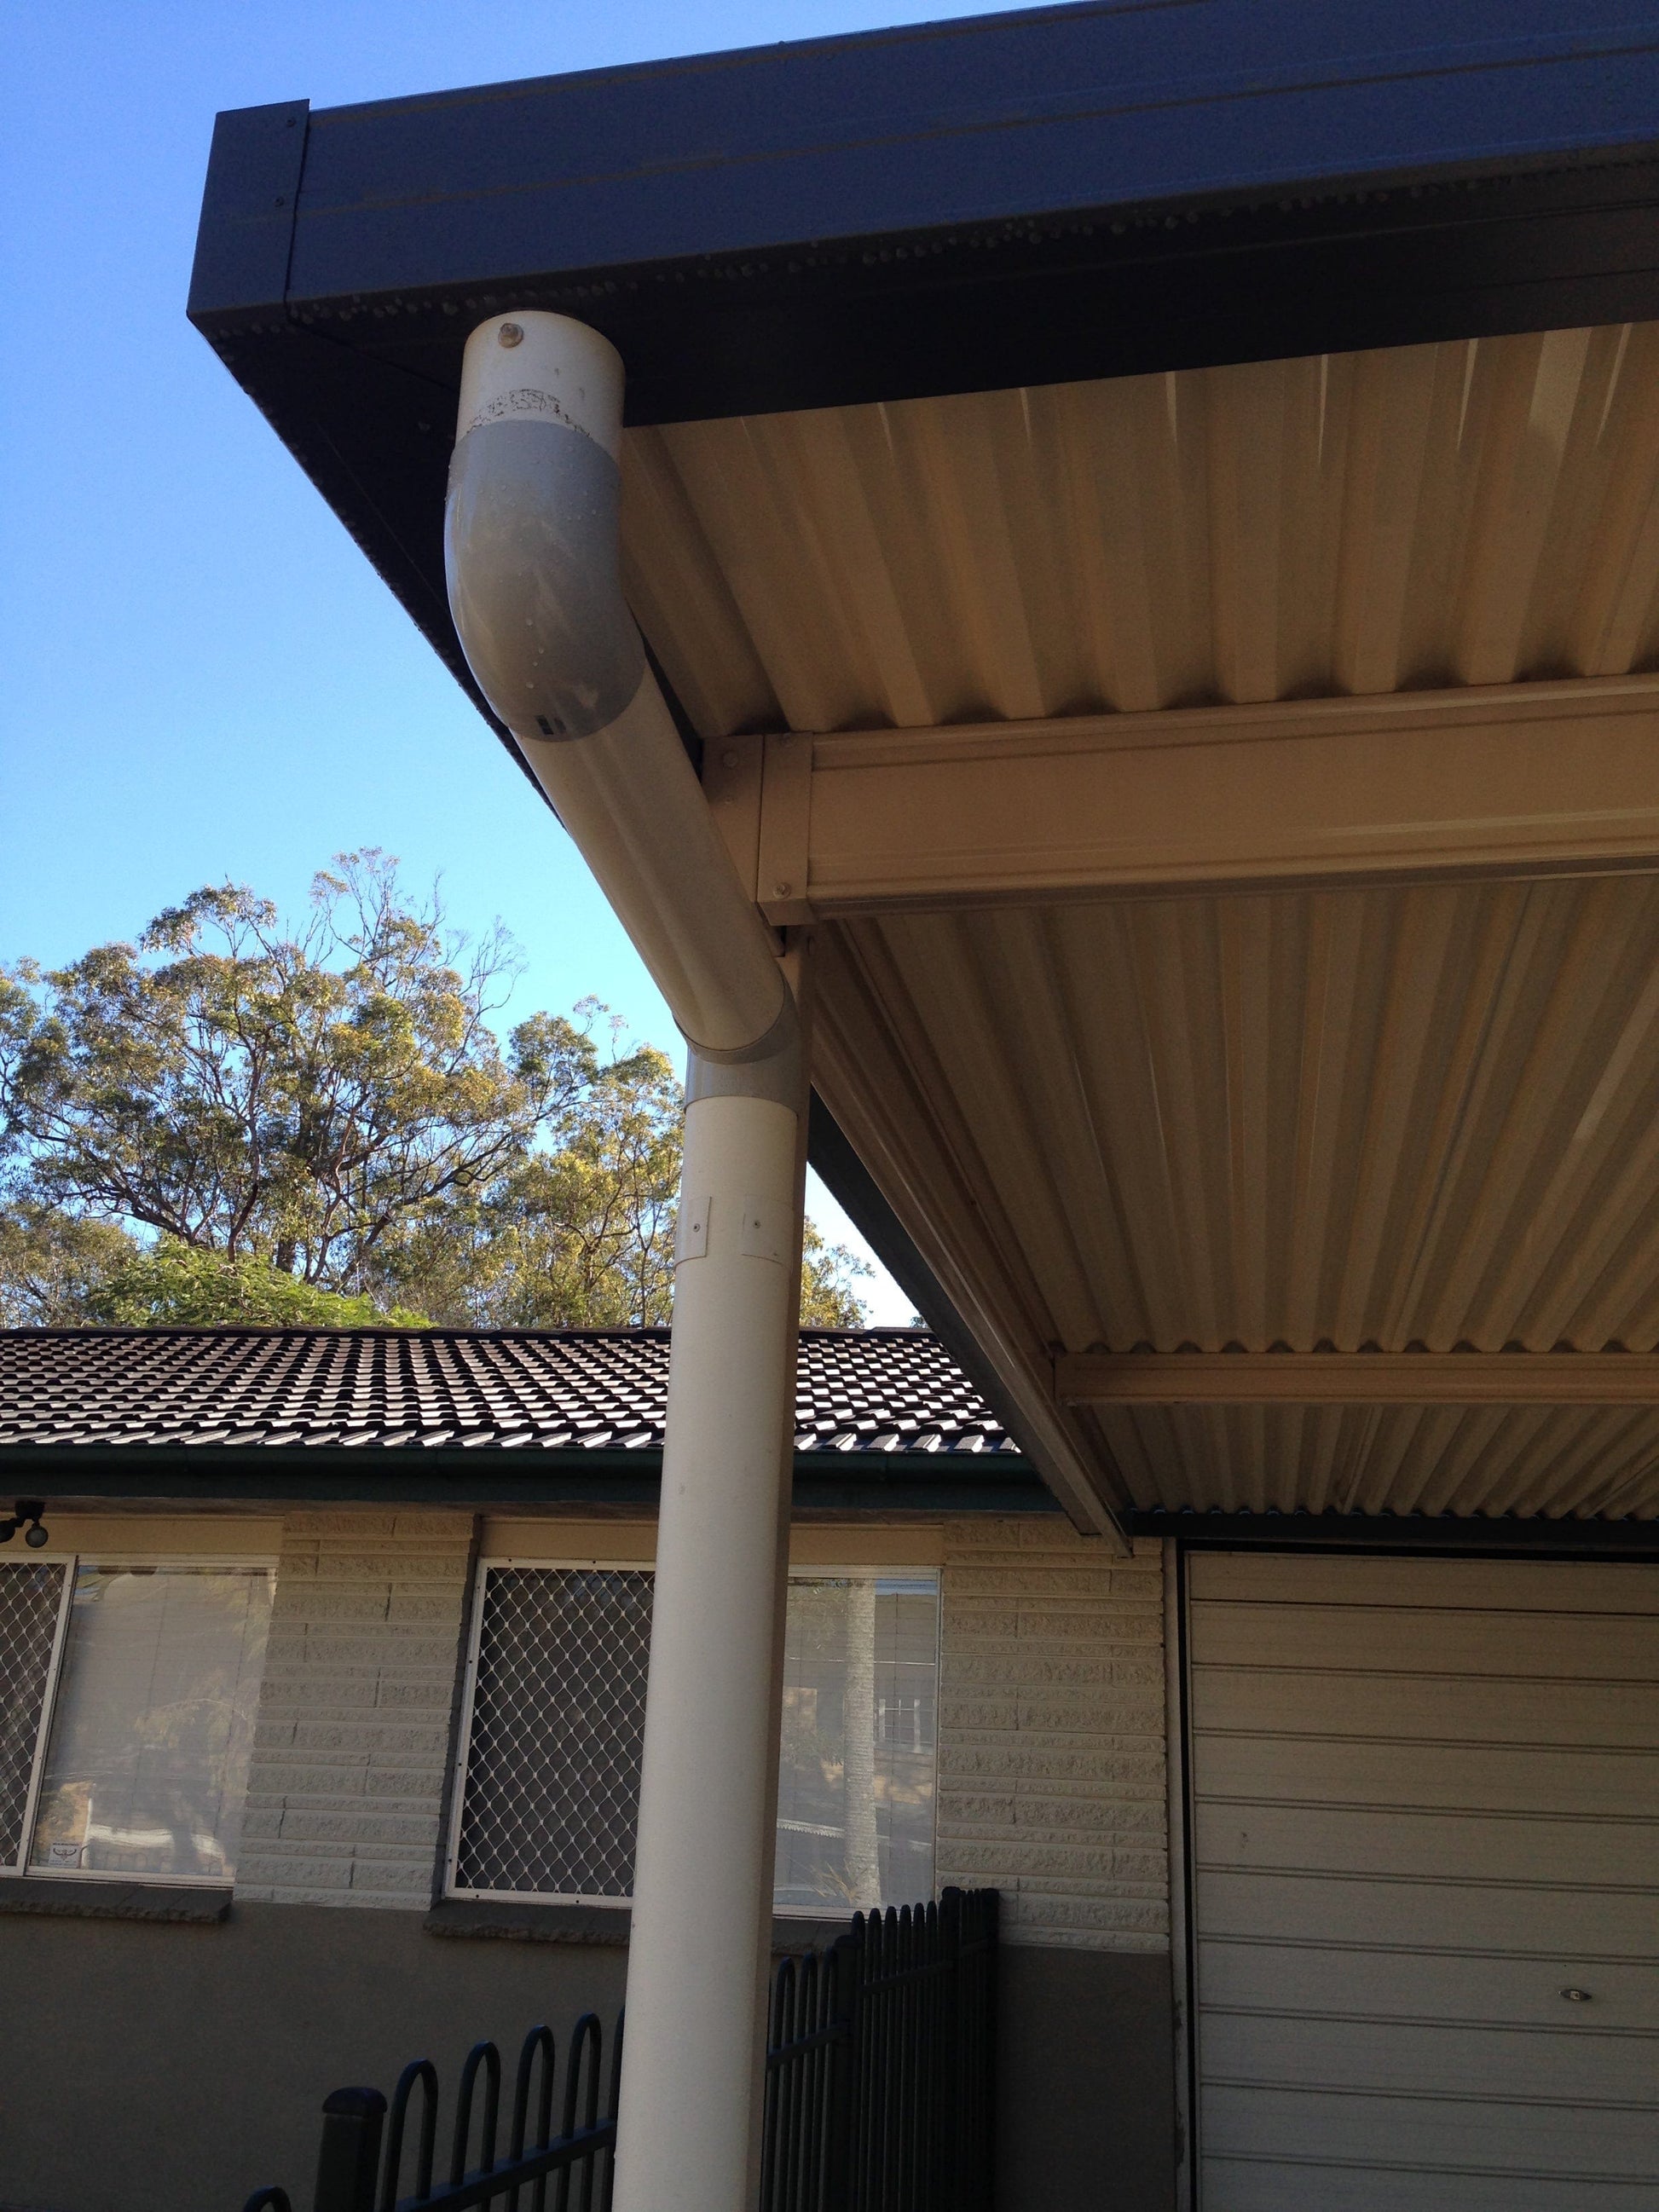 SmartKits Australia Flat Roof Carport- 10m (L) x 6m (W).